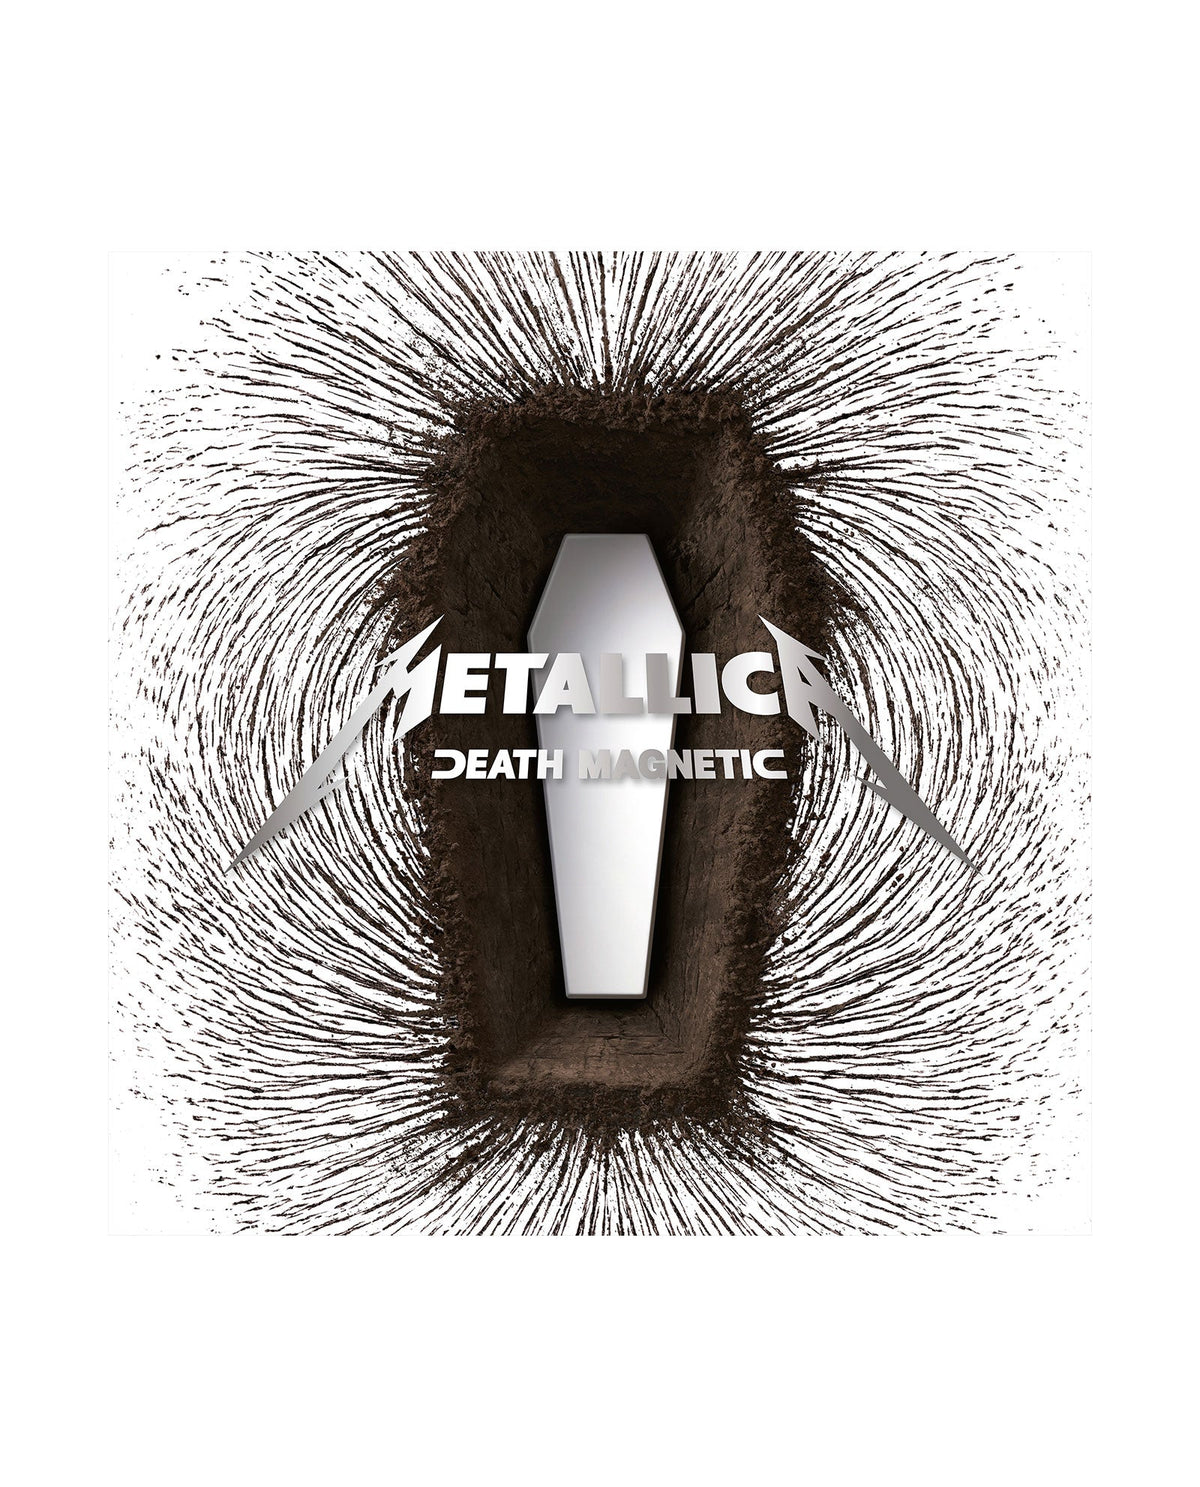 Metallica - 2LP Vinilo Plata "Death Magnetic" Ed. limitada - D2fy · Rocktud - Rocktud